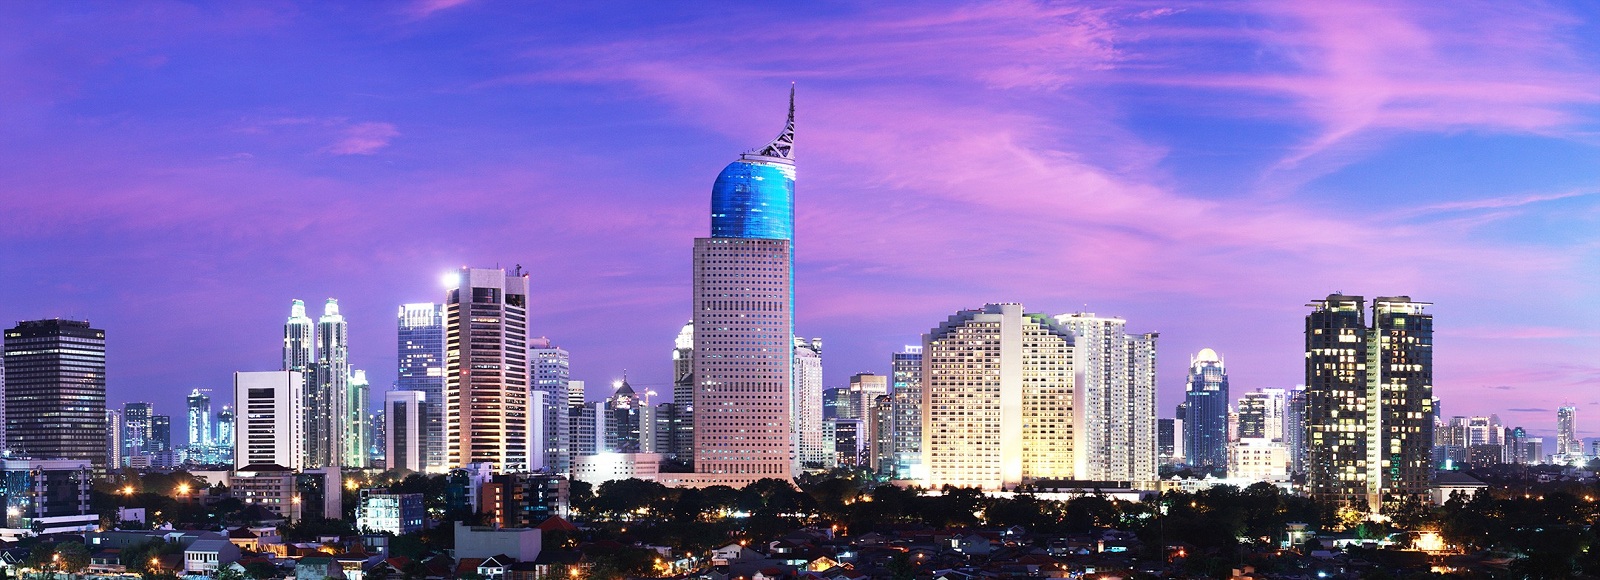 Ofertas de Traslados en Jakarta. Traslados económicos en Jakarta 